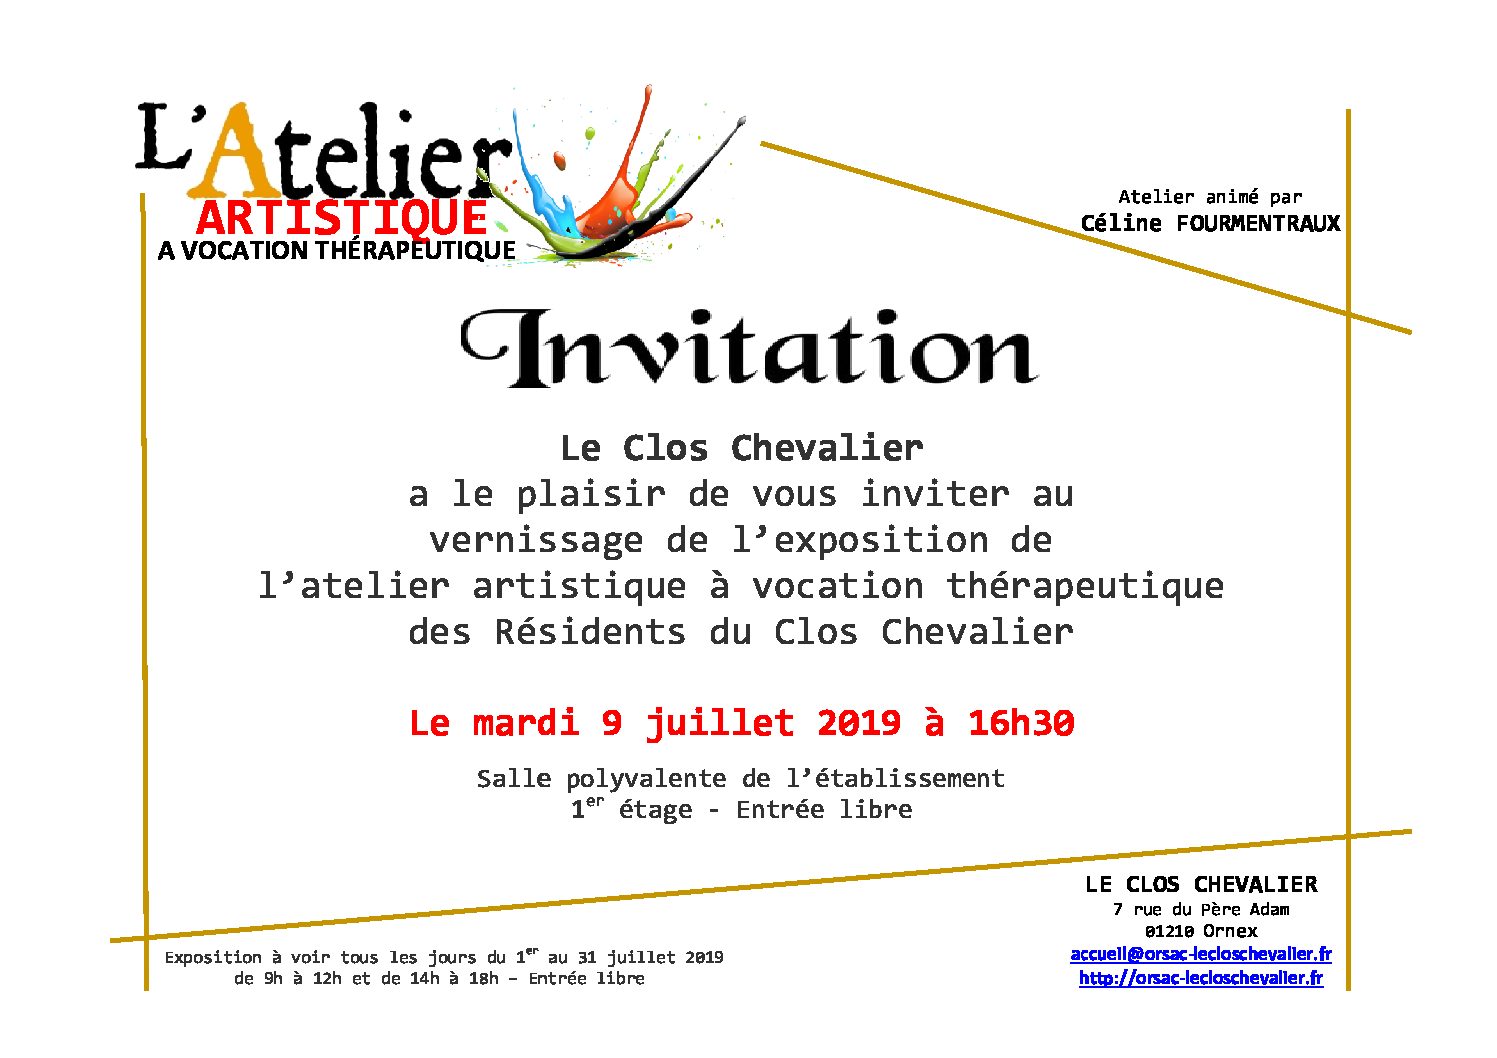 Vernissage de l’exposition de l’Atelier Artistique – Mardi 9 juillet 2019 à 16h30 au Clos Chevalier